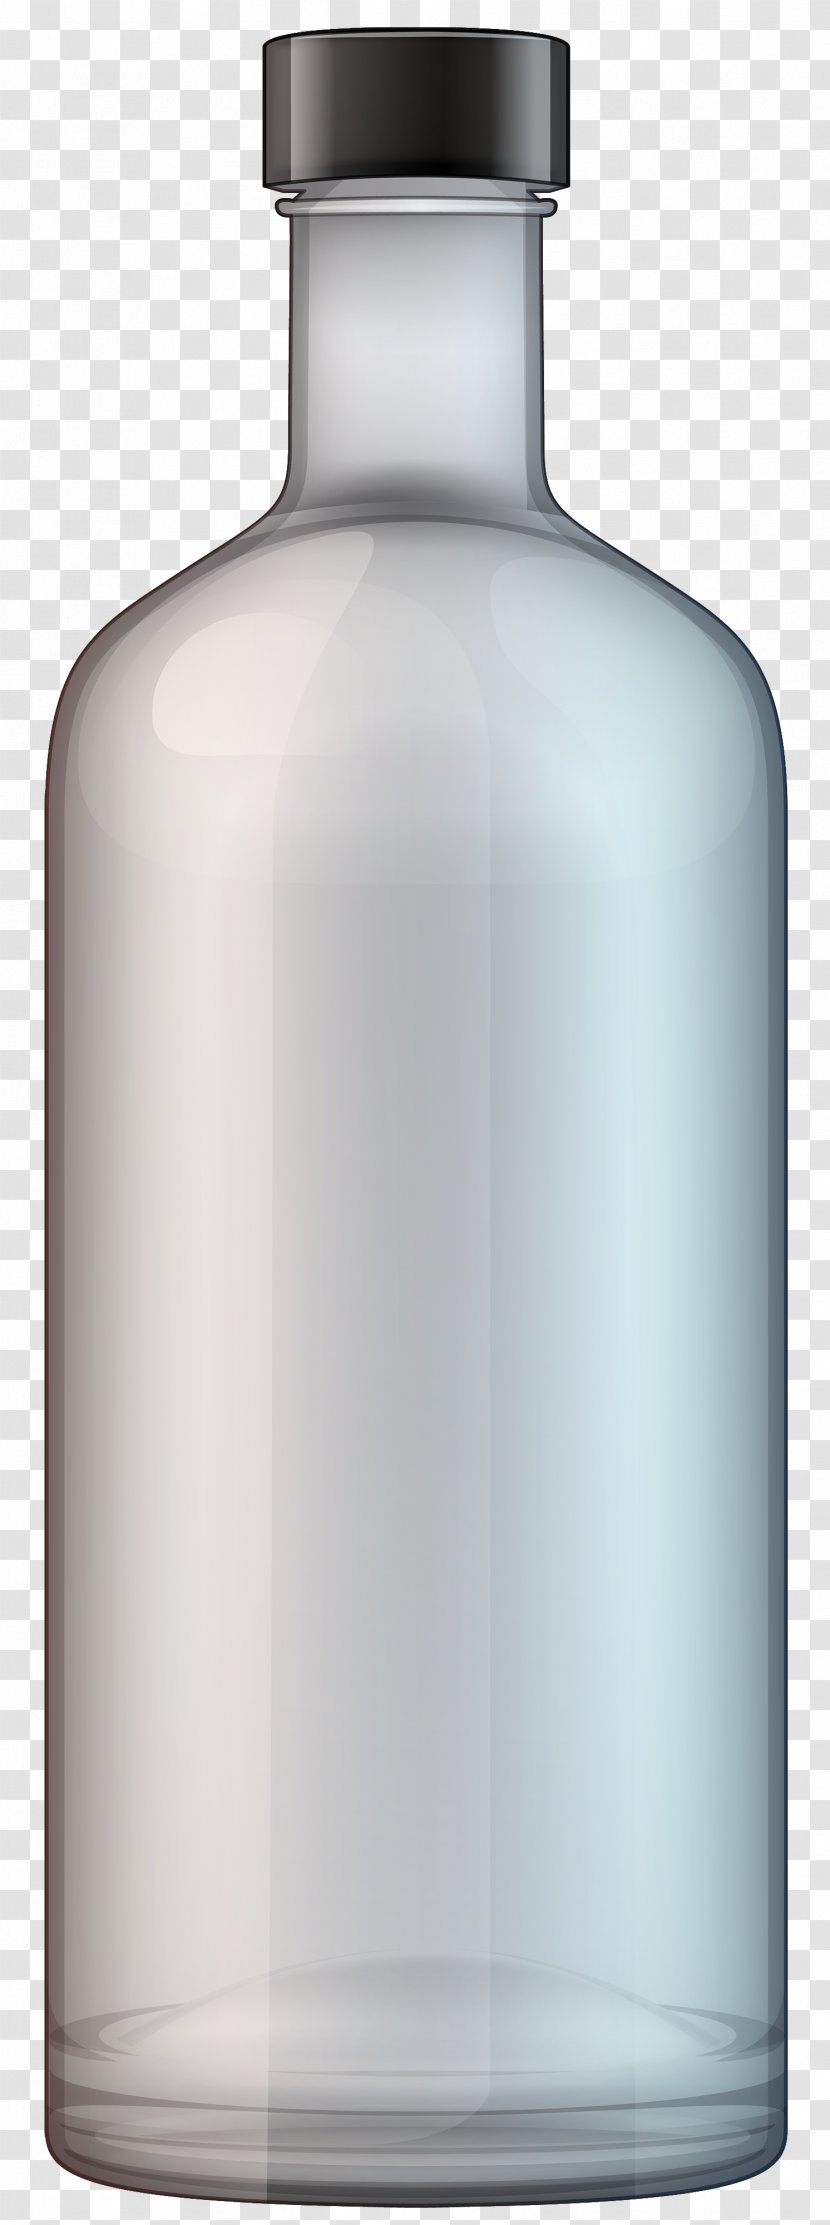 Vodka Wine Distilled Beverage Beer Bottle Transparent PNG